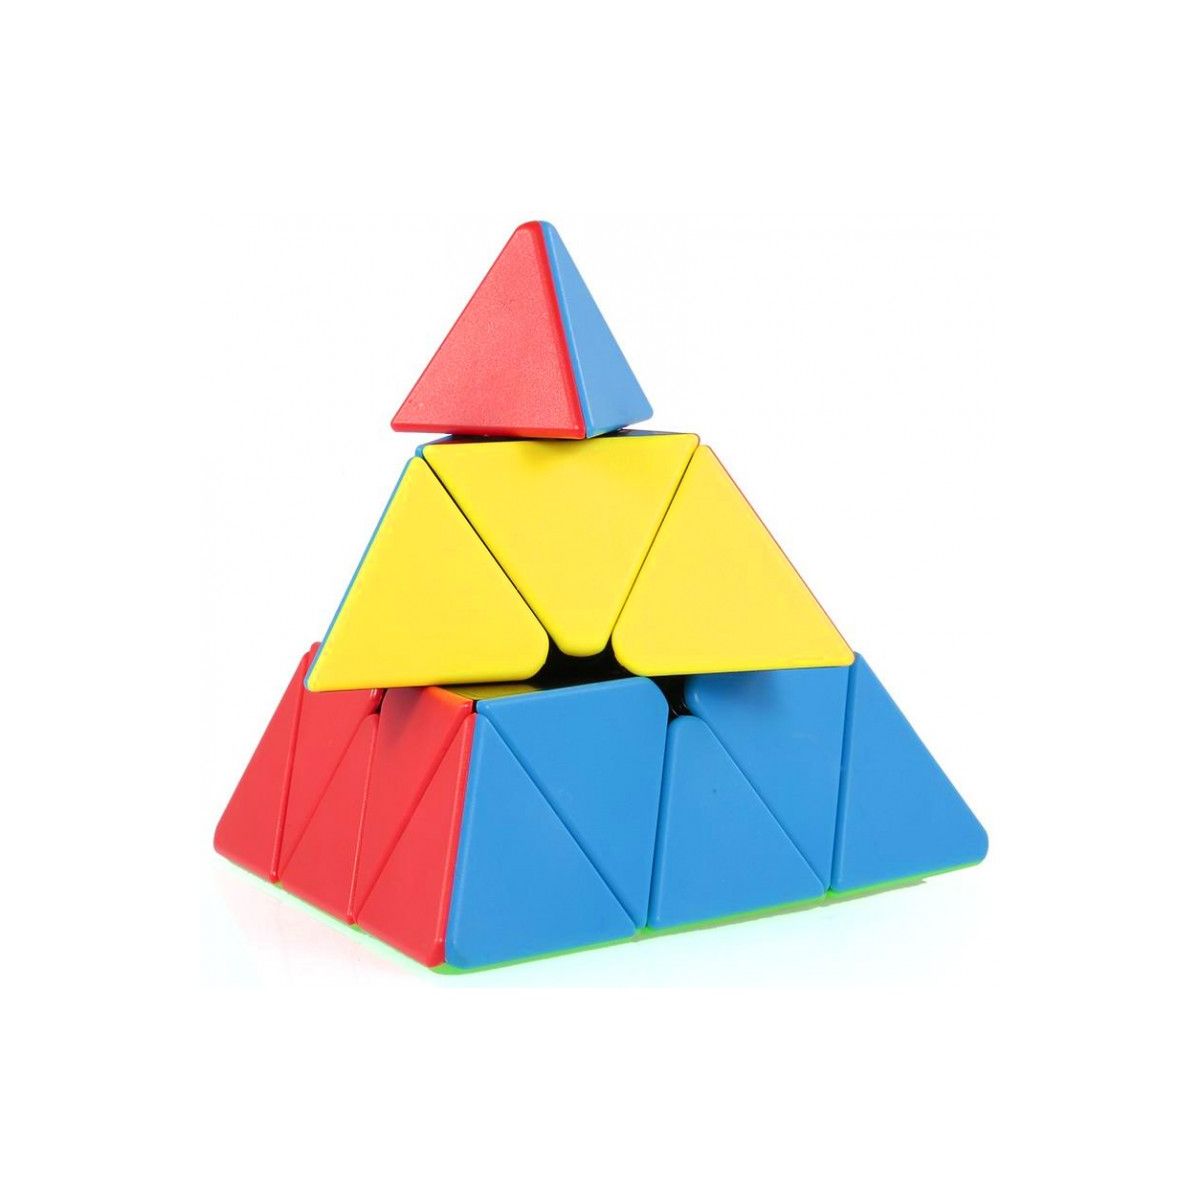 Układanka Trifox logiczna piramidka trójkąt (B-1317)